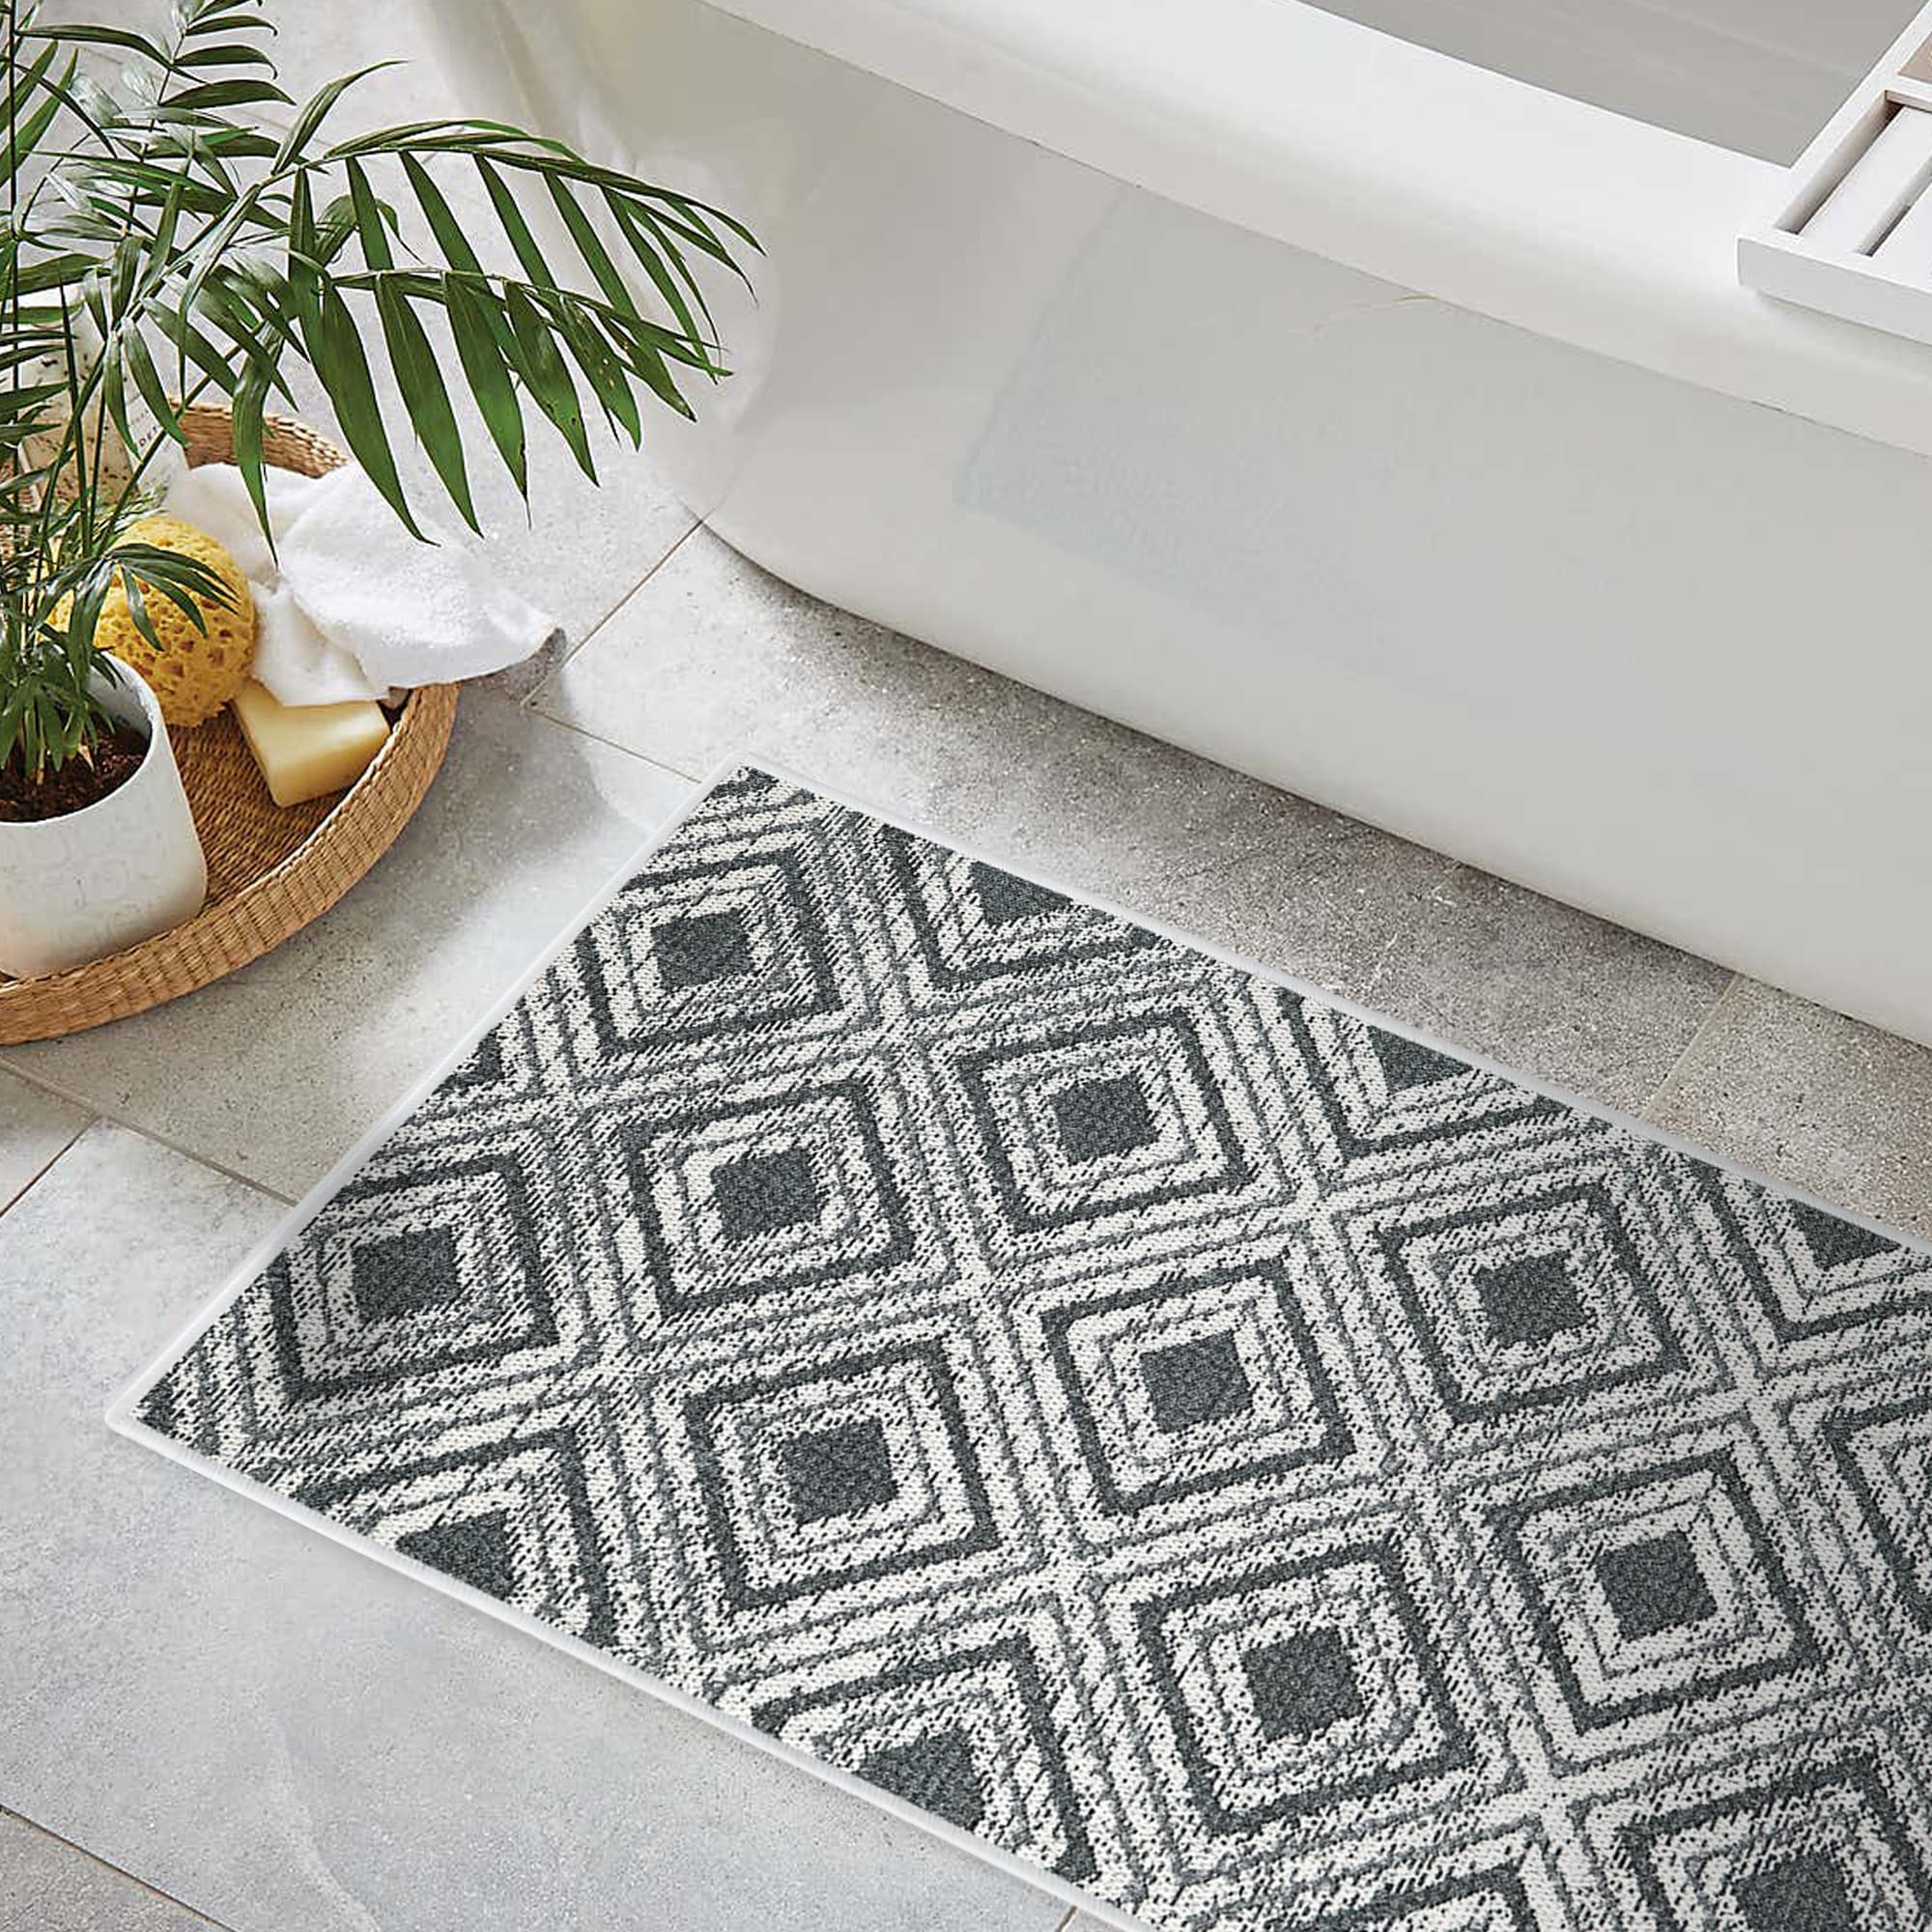 3D Black White Grid Floor Memory Foam Home Carpet Rug Non-slip Door Bath Mat 